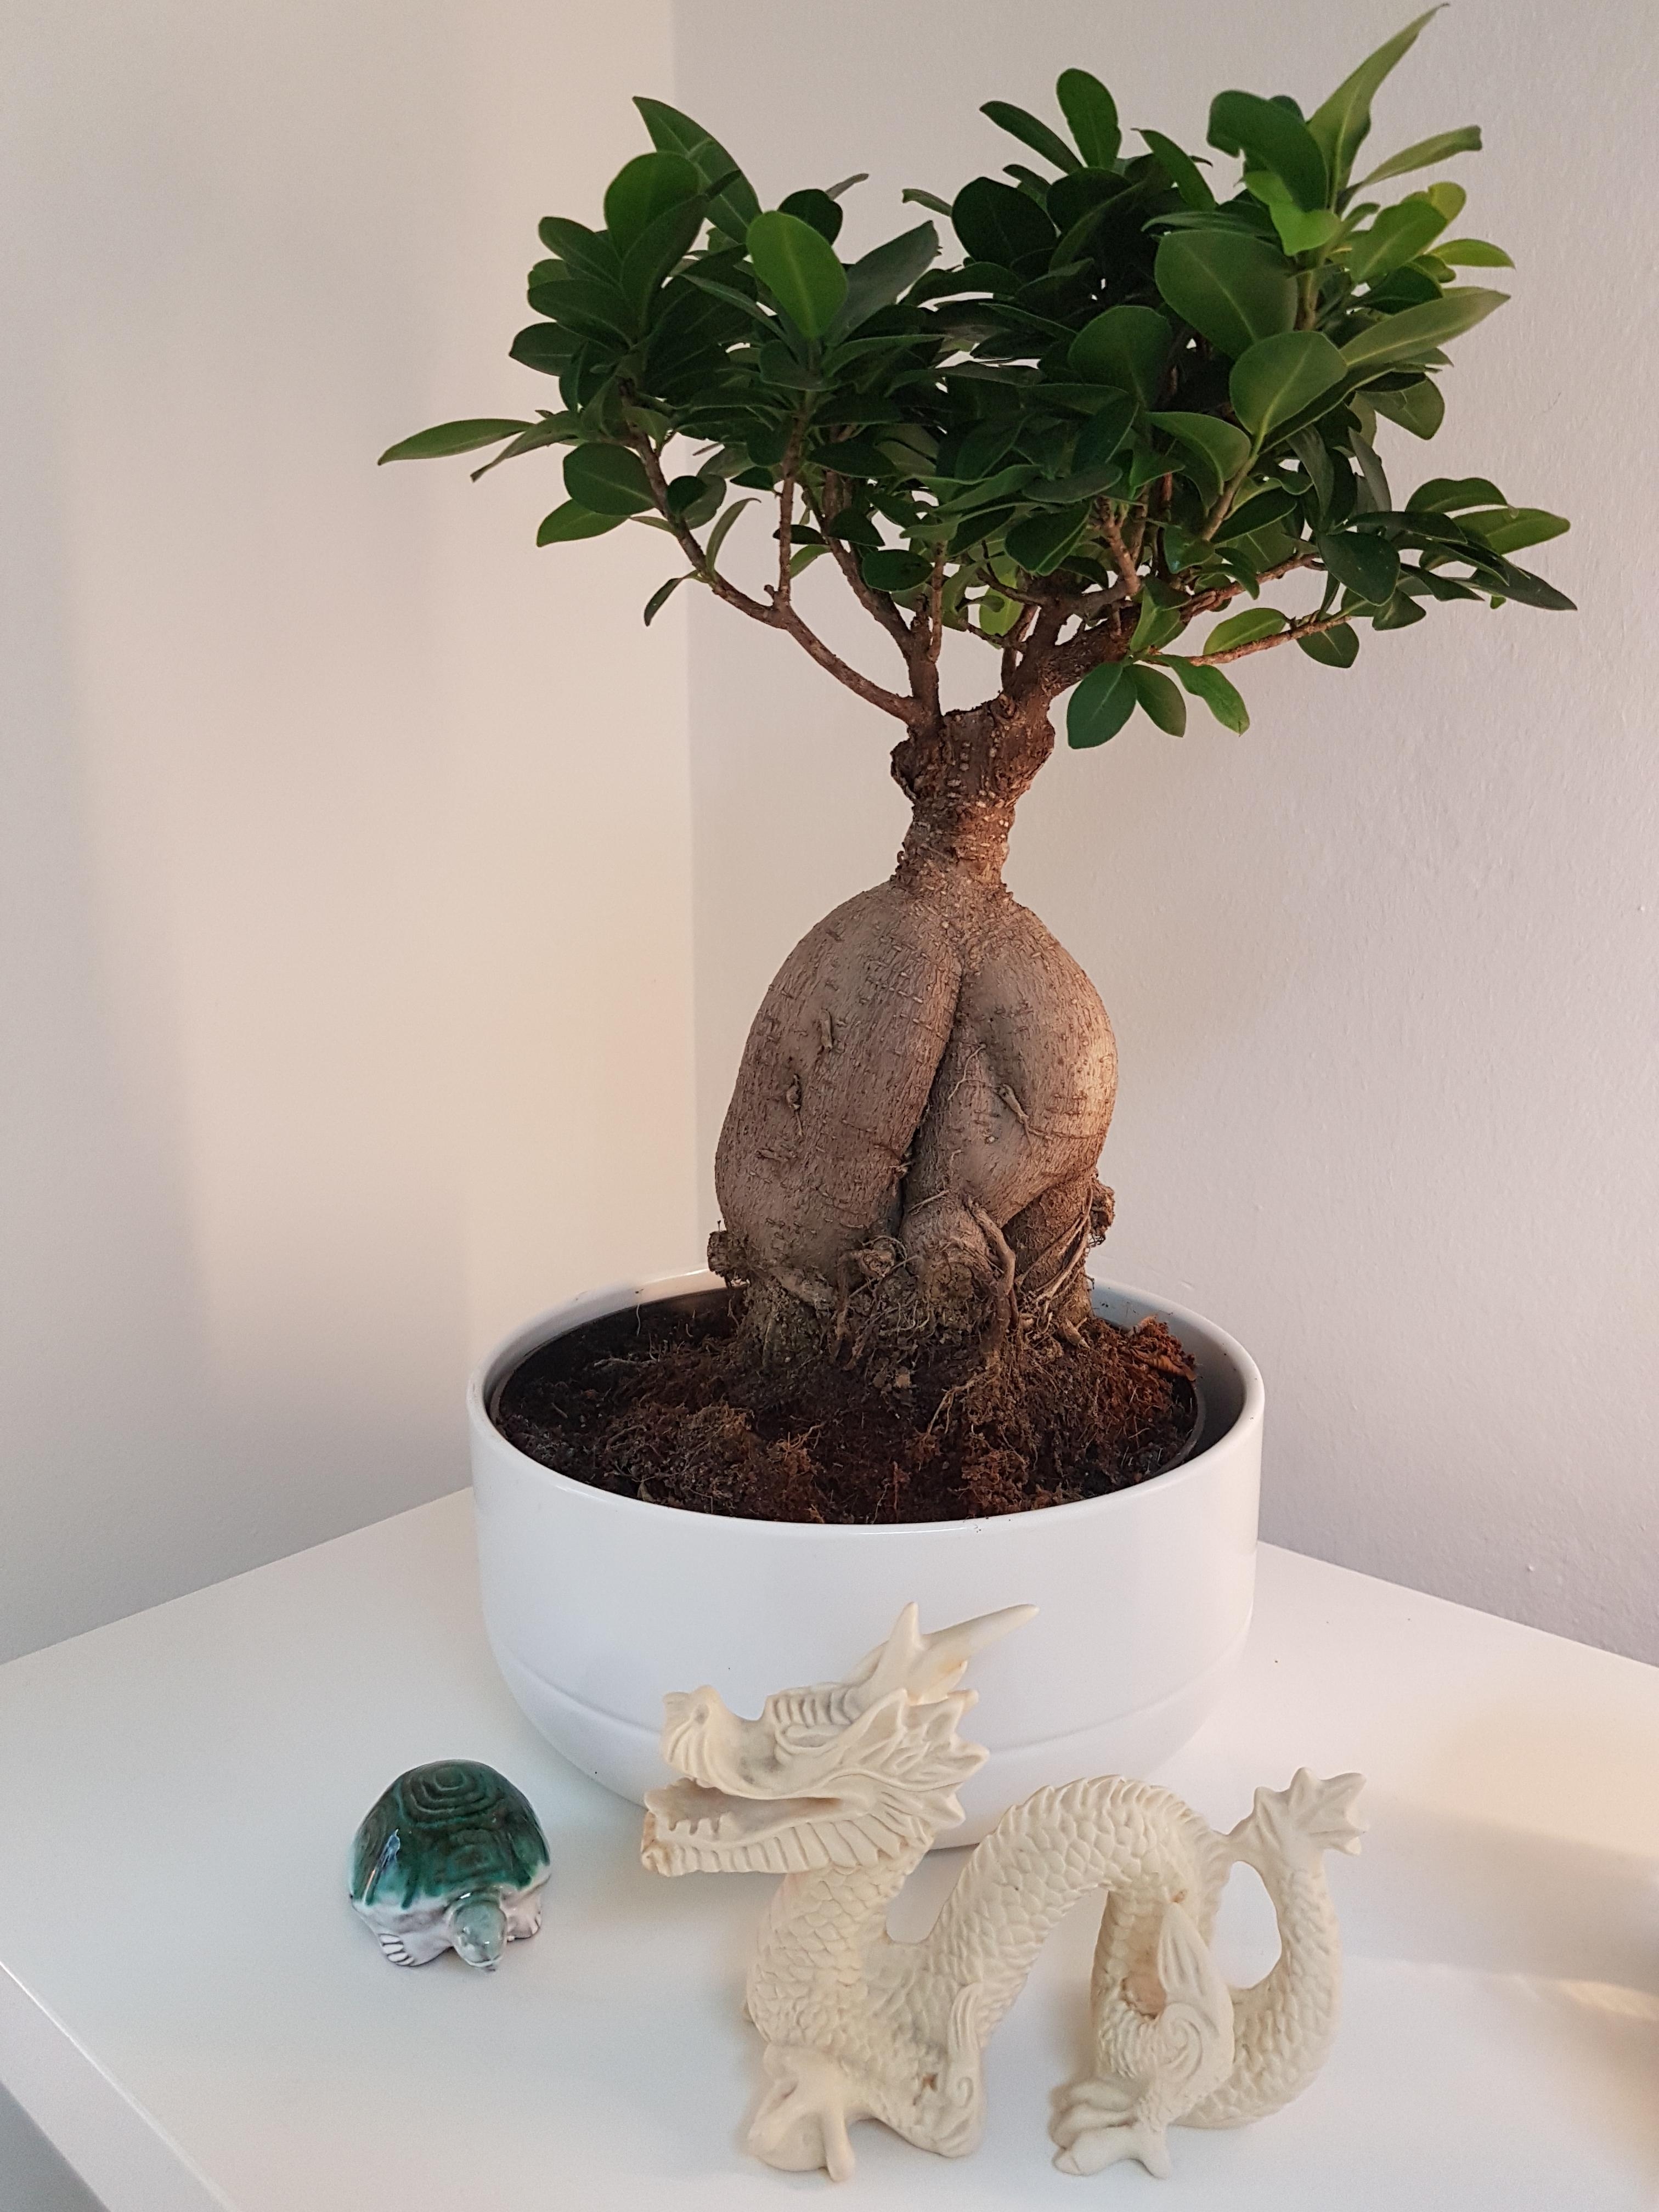 ..die Mimose unter den Pflanzen. 🙄

siehe Kommentare

#bonsai
#nerv
#Pflanzengezicke